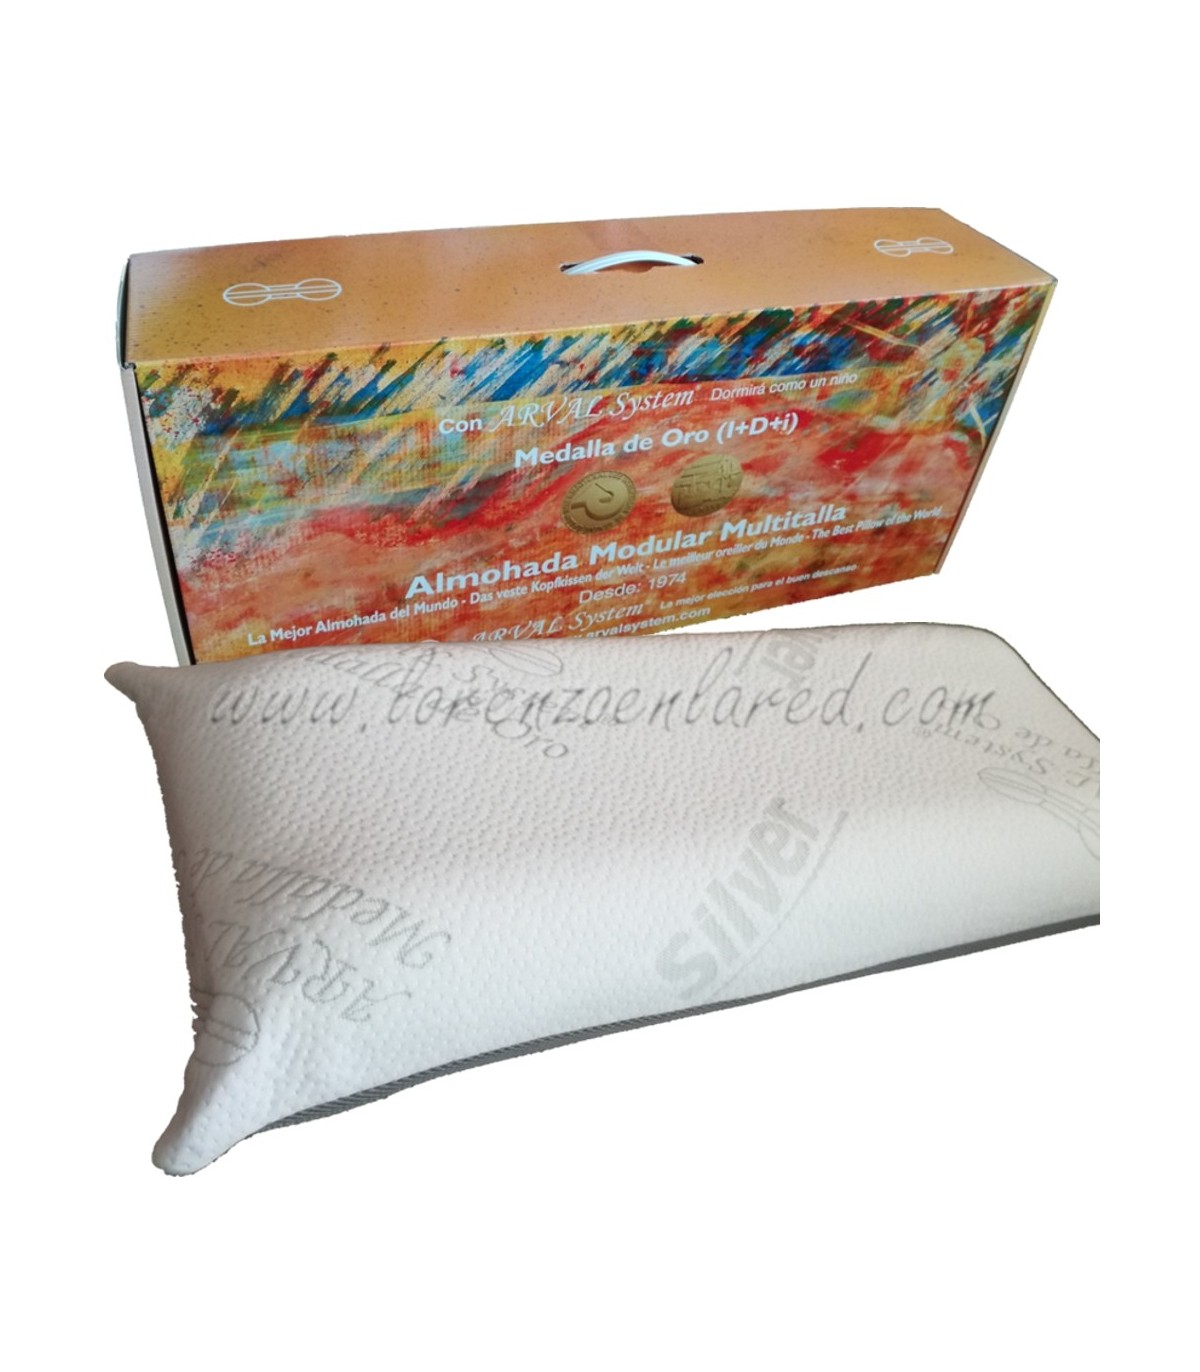 Almohada visco elastica Cervical con Caja Memory Pillow